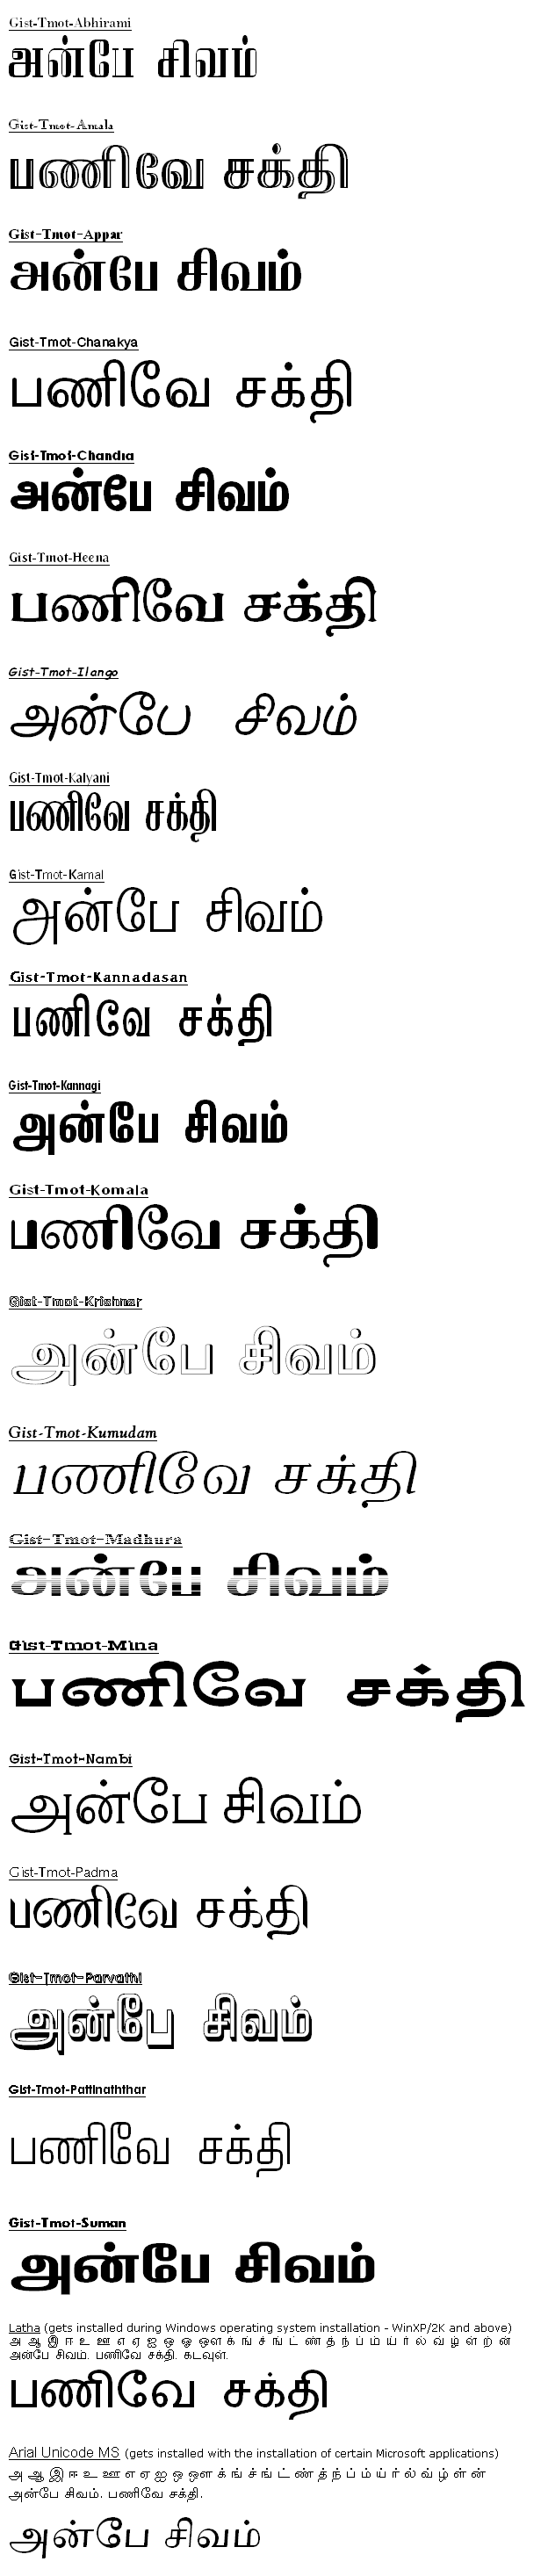 Shruti font free download for mac catalina